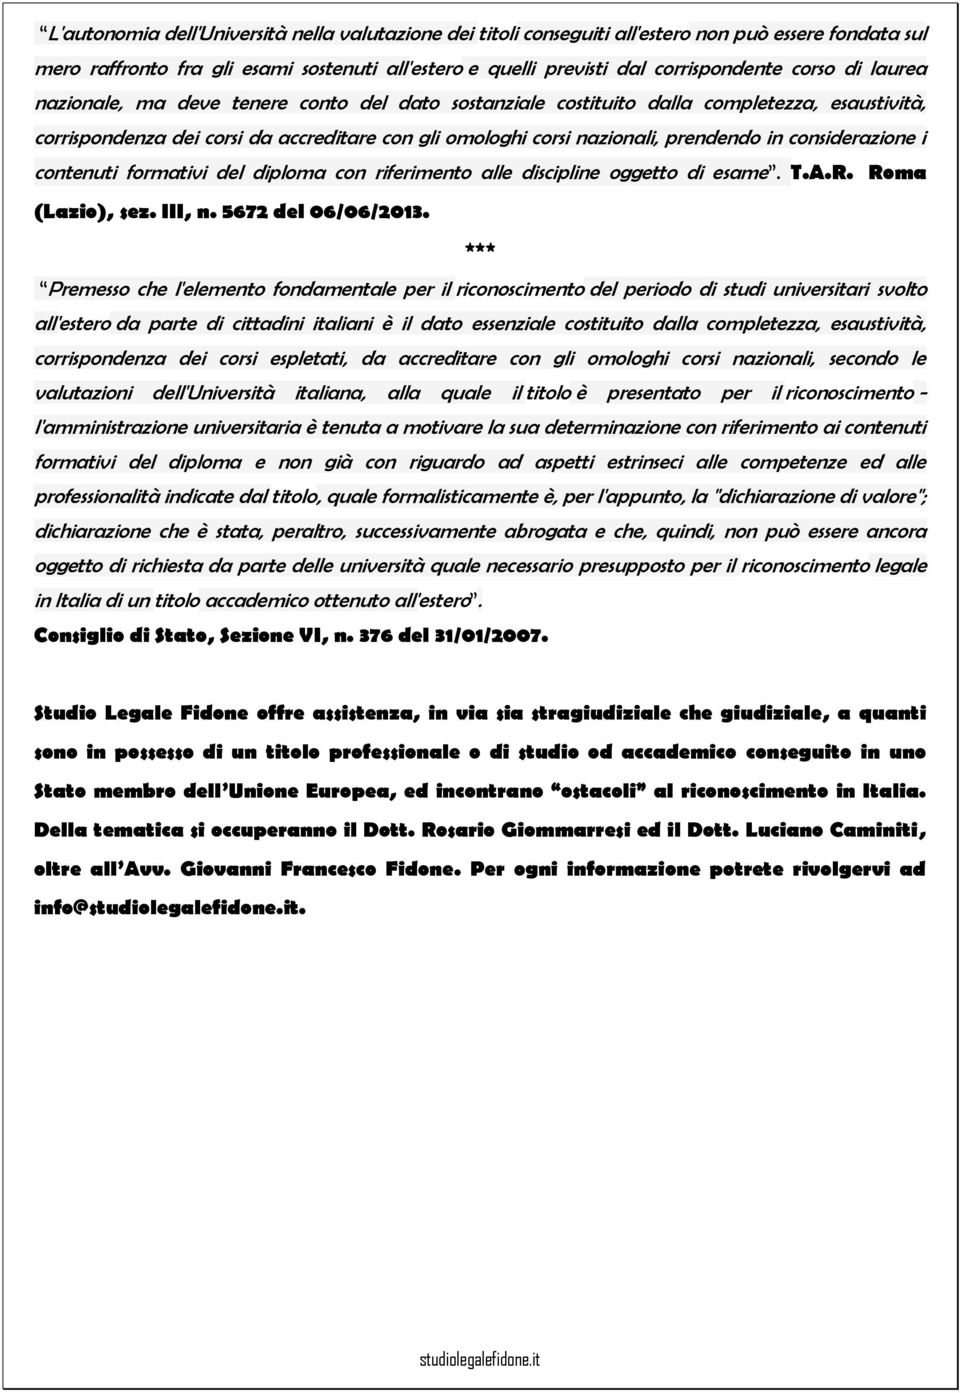 considerazione i contenuti formativi del diploma con riferimento alle discipline oggetto di esame. T.A.R. Roma (Lazio), sez. III, n. 5672 del 06/06/2013.